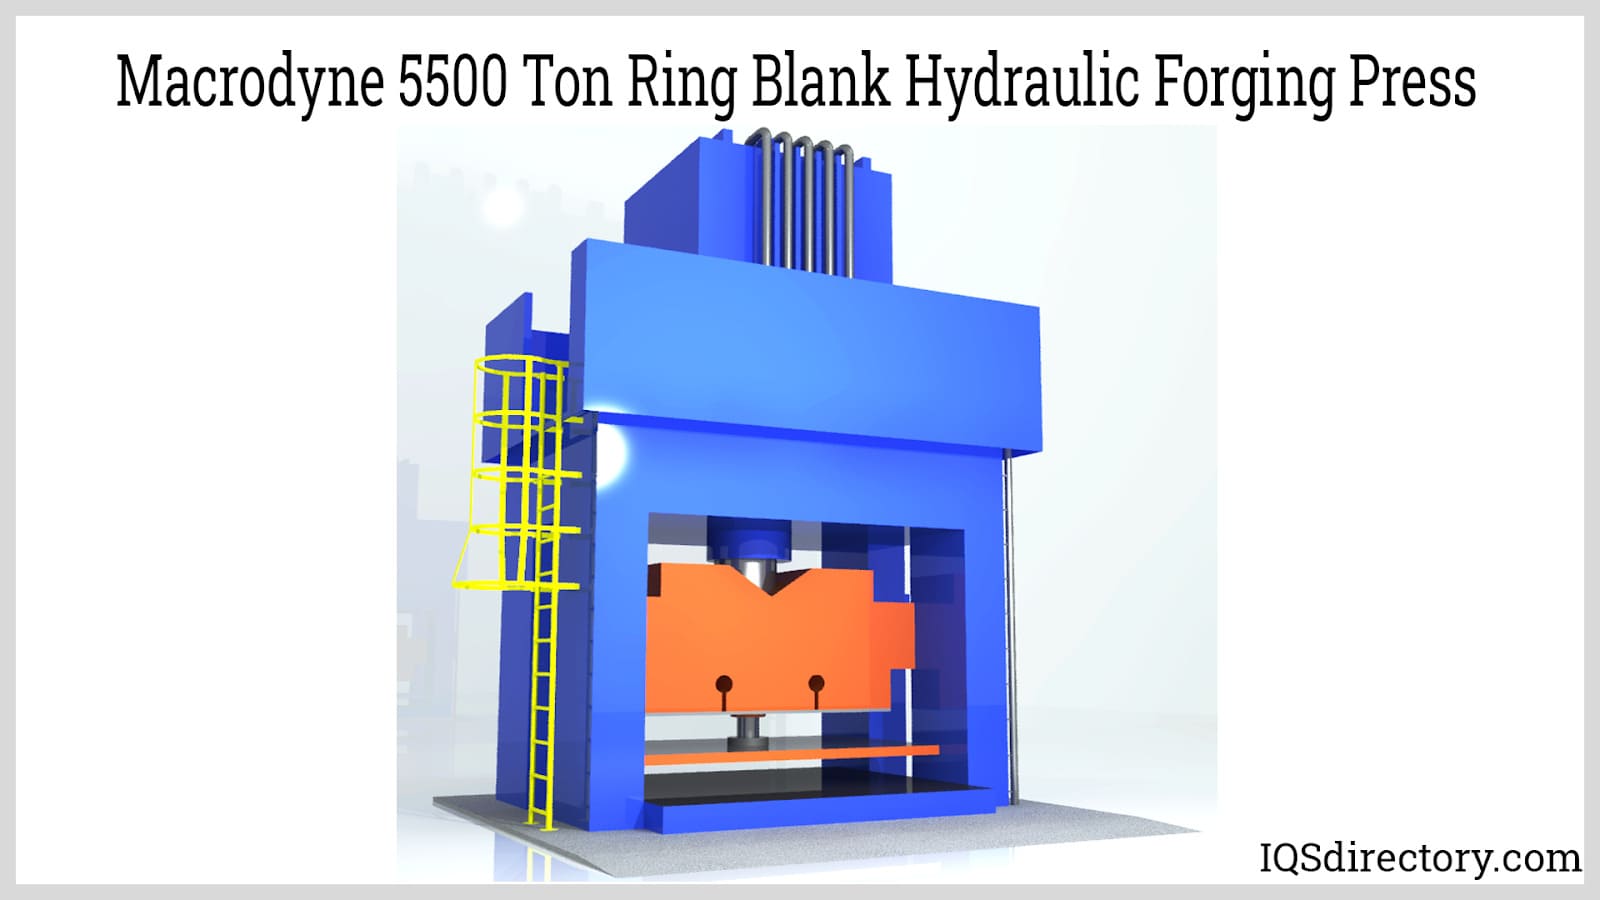 Macrodyne 5500 Ton Ring Blank Hydraulic Forging Press